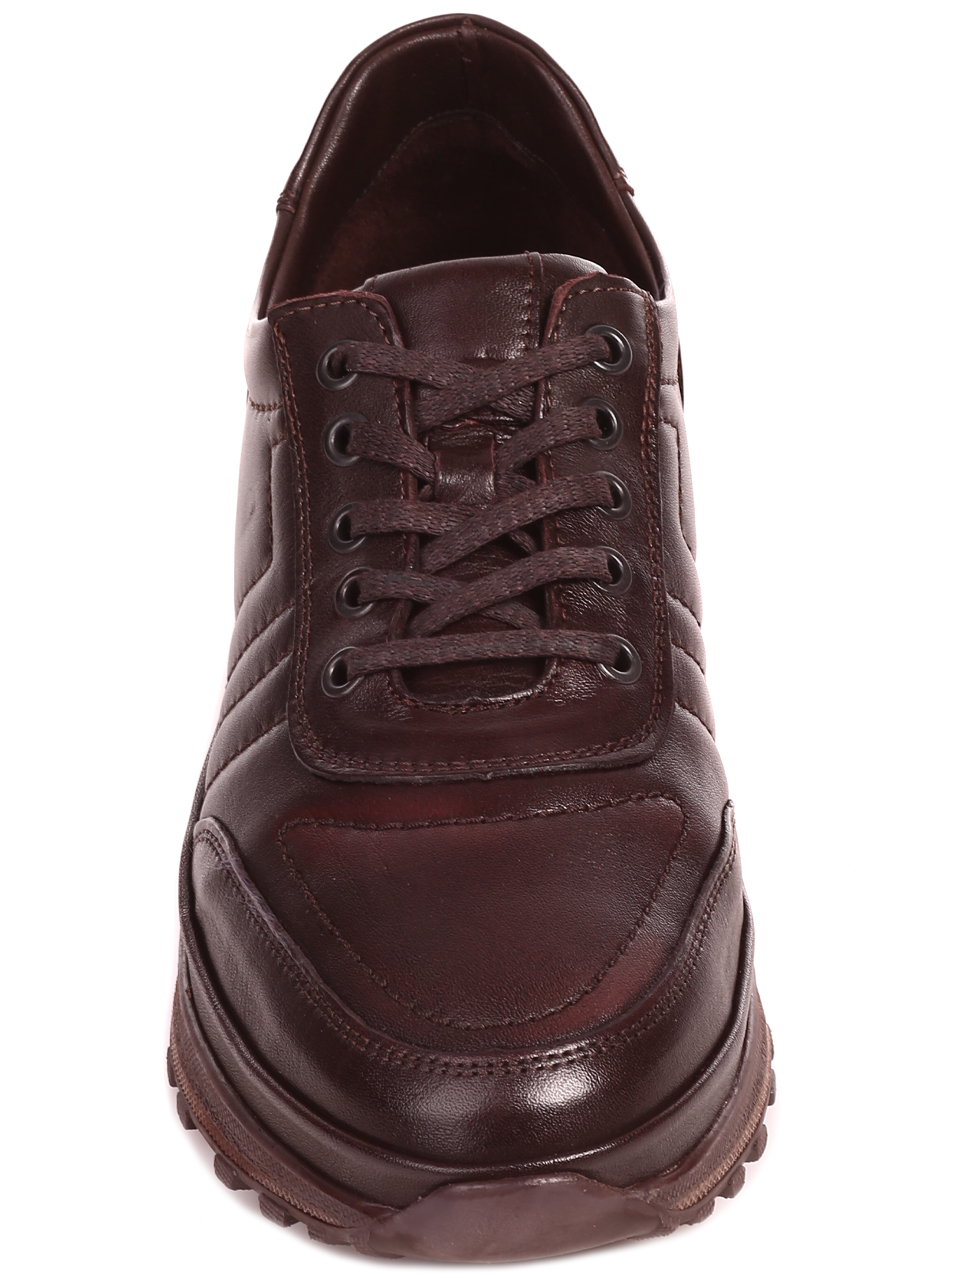 Ежедневни мъжки обувки от естествена кожа 7AT-22755 coffee